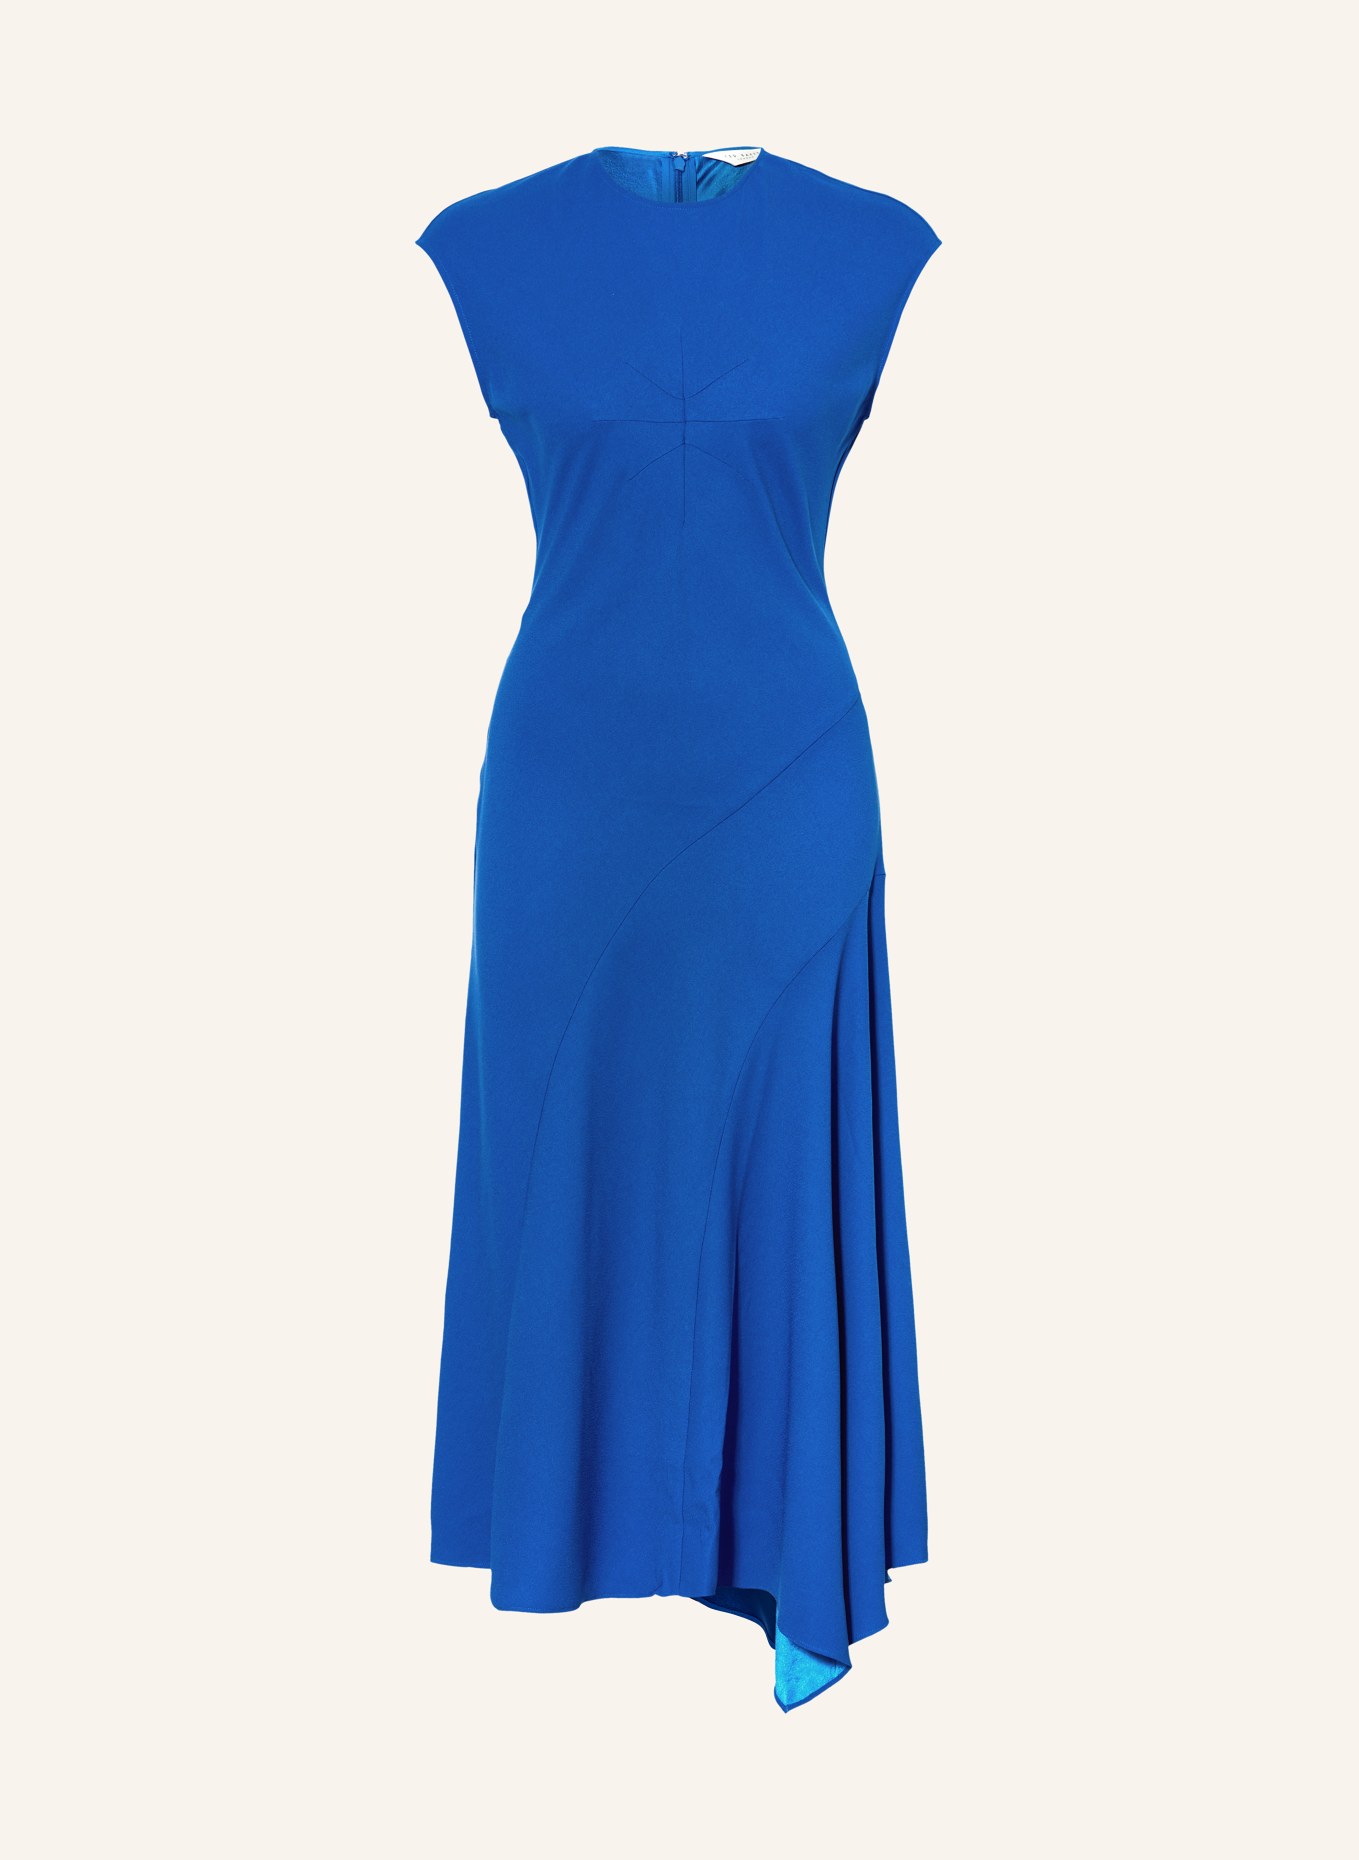 TED BAKER Kleid ISPARTA, Farbe: BLAU (Bild 1)